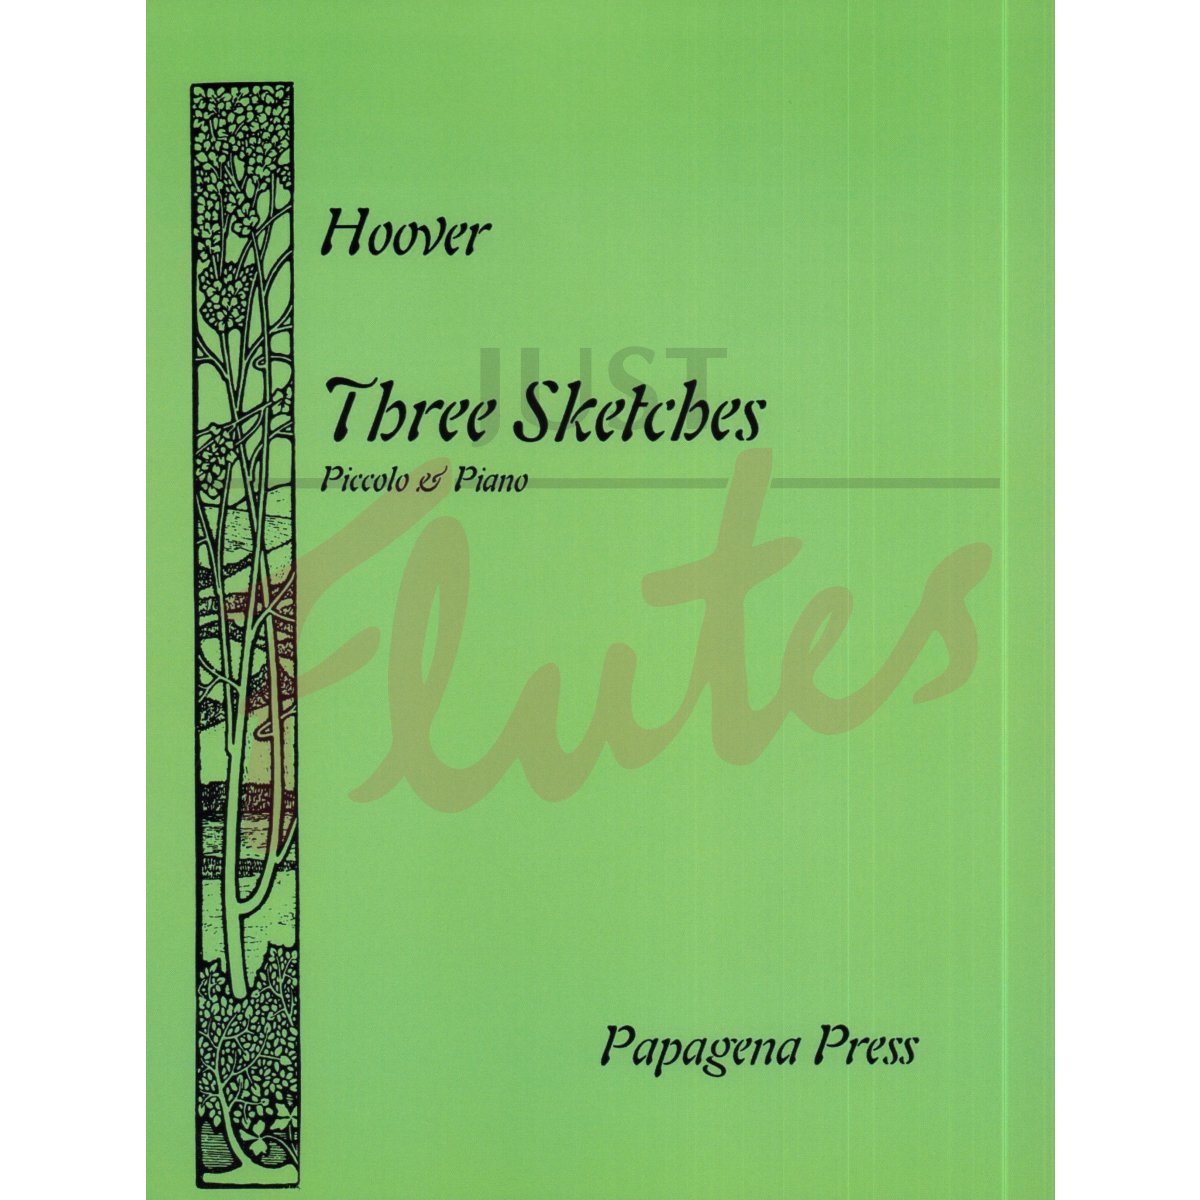 Three Sketches for Piccolo and Piano